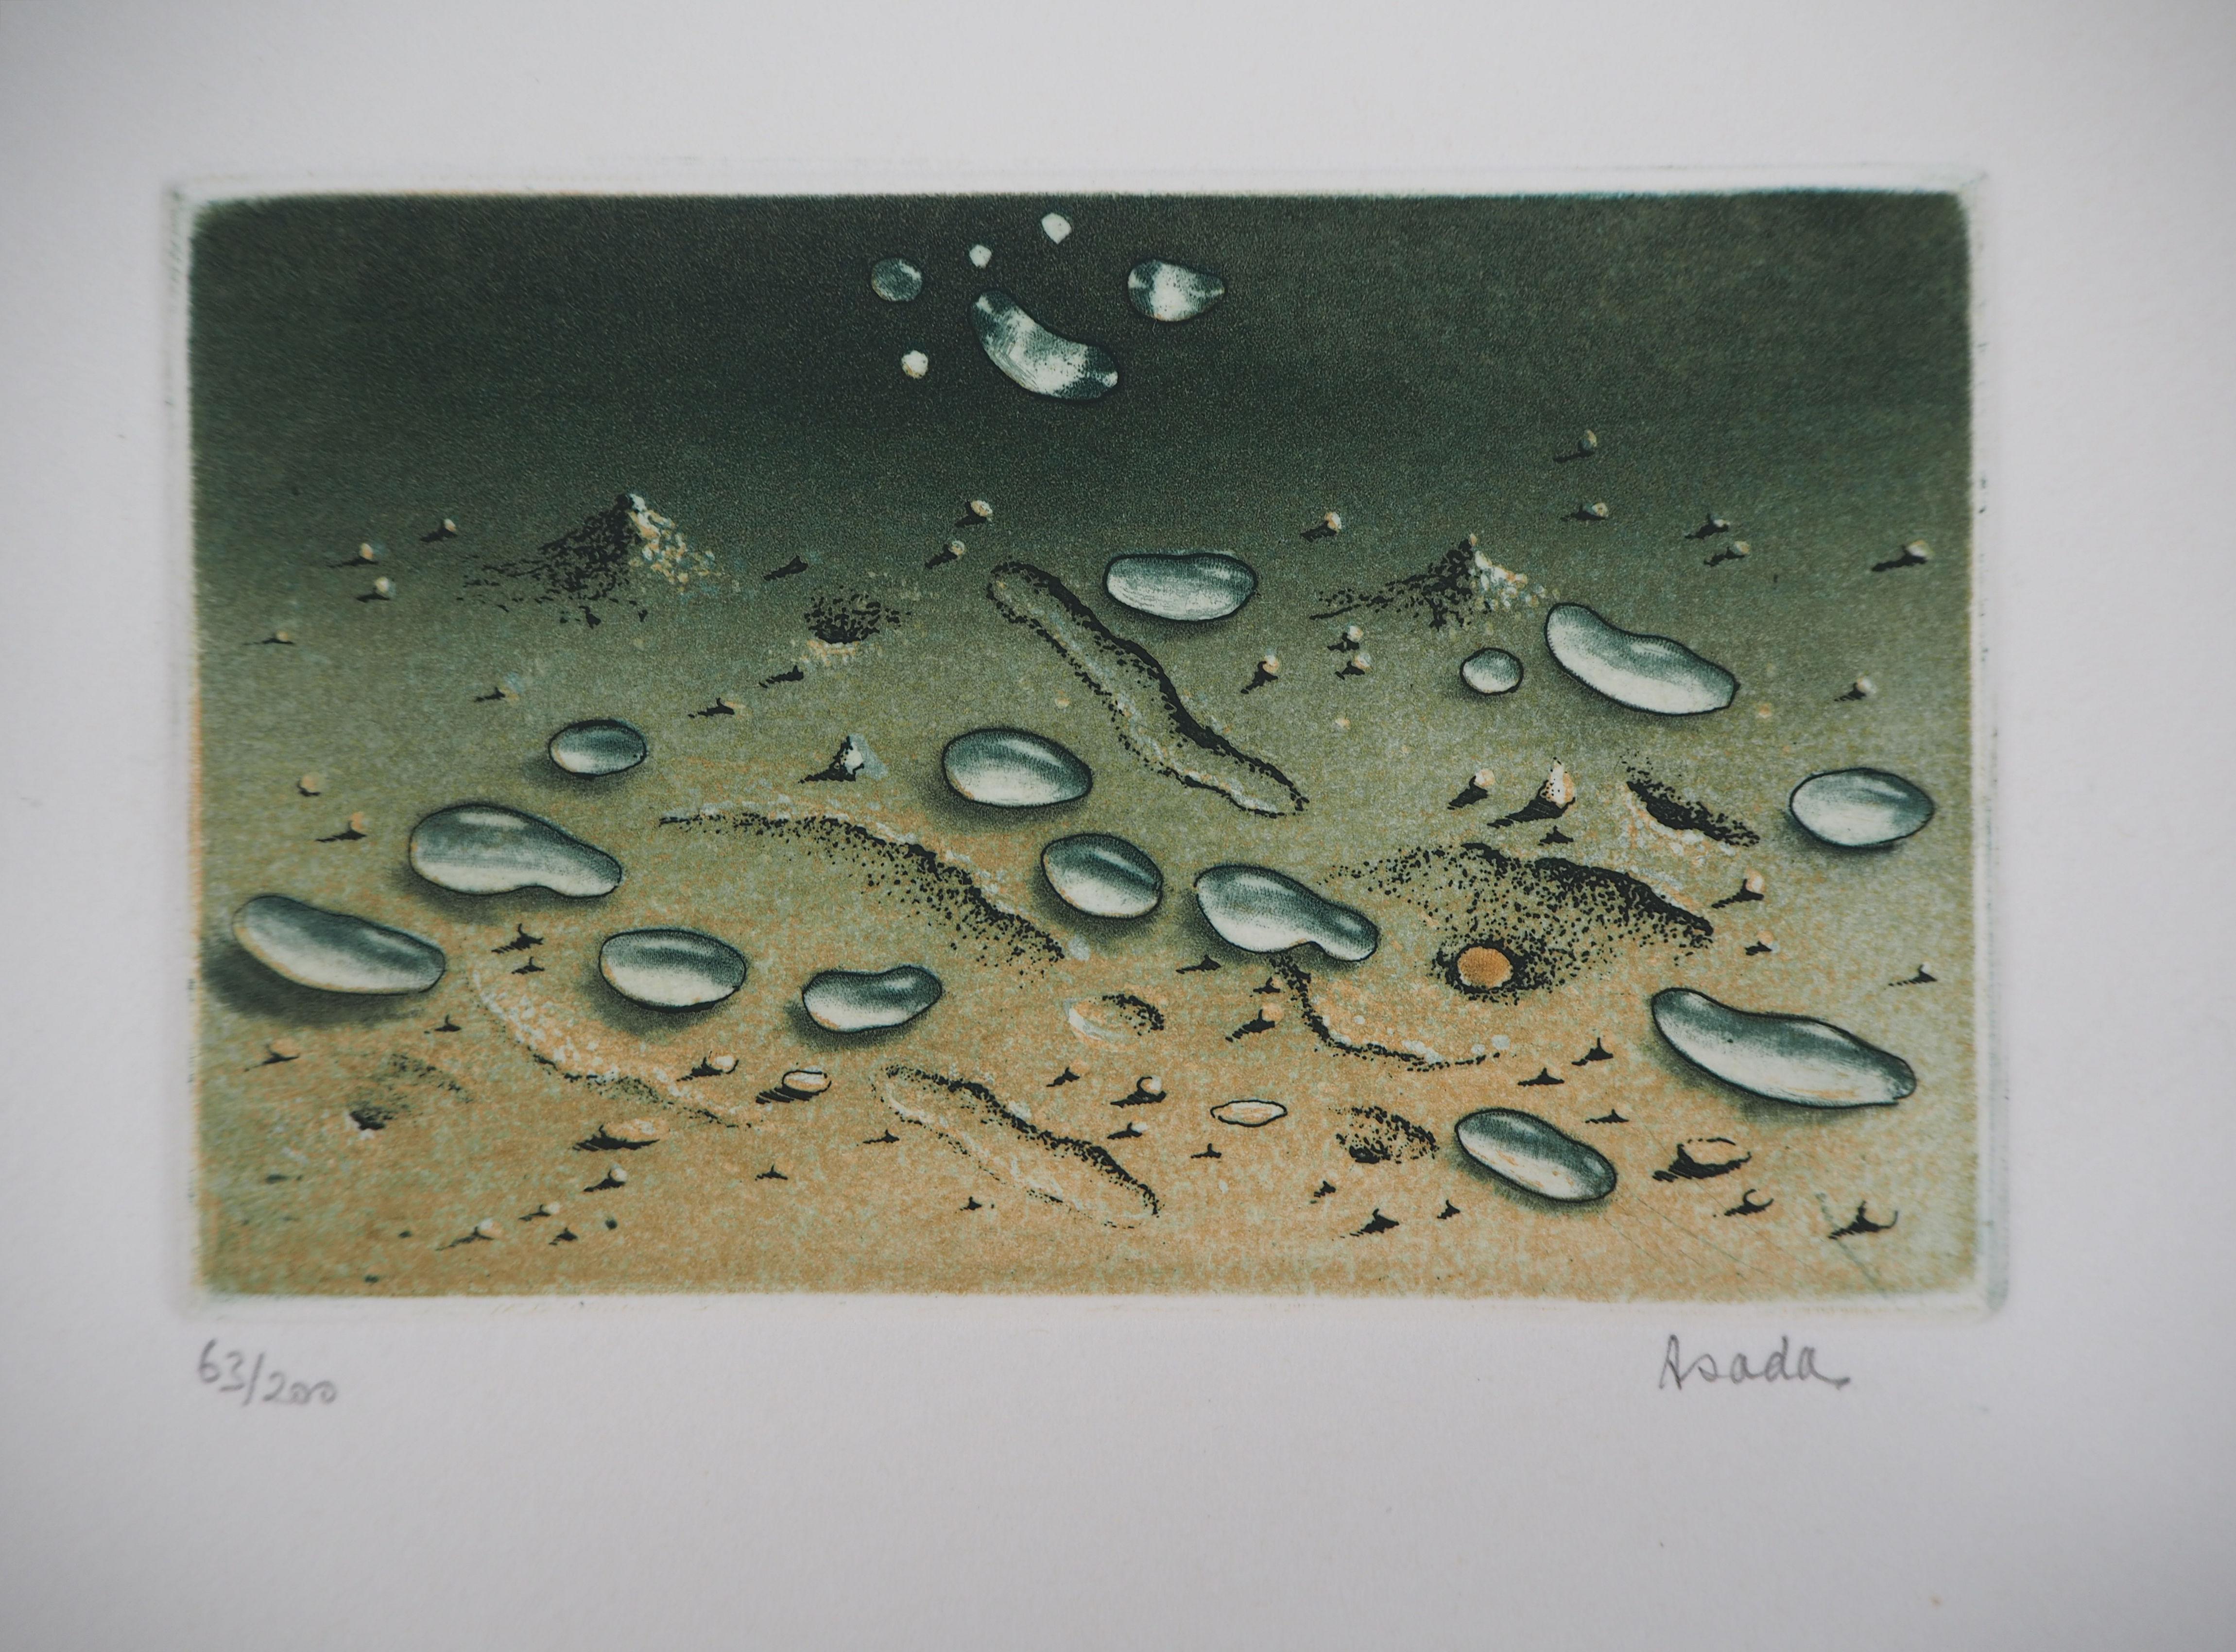 Hiroshi ASADA
Zen : Wassertropfen auf dem Sand

Original Radierung und Aquatinta
Handsigniert mit Bleistift
Nummeriert / 200
Auf Arches Pergament 16,5 x 21 cm (ca. 6,5 x 8 inch)

Ausgezeichneter Zustand